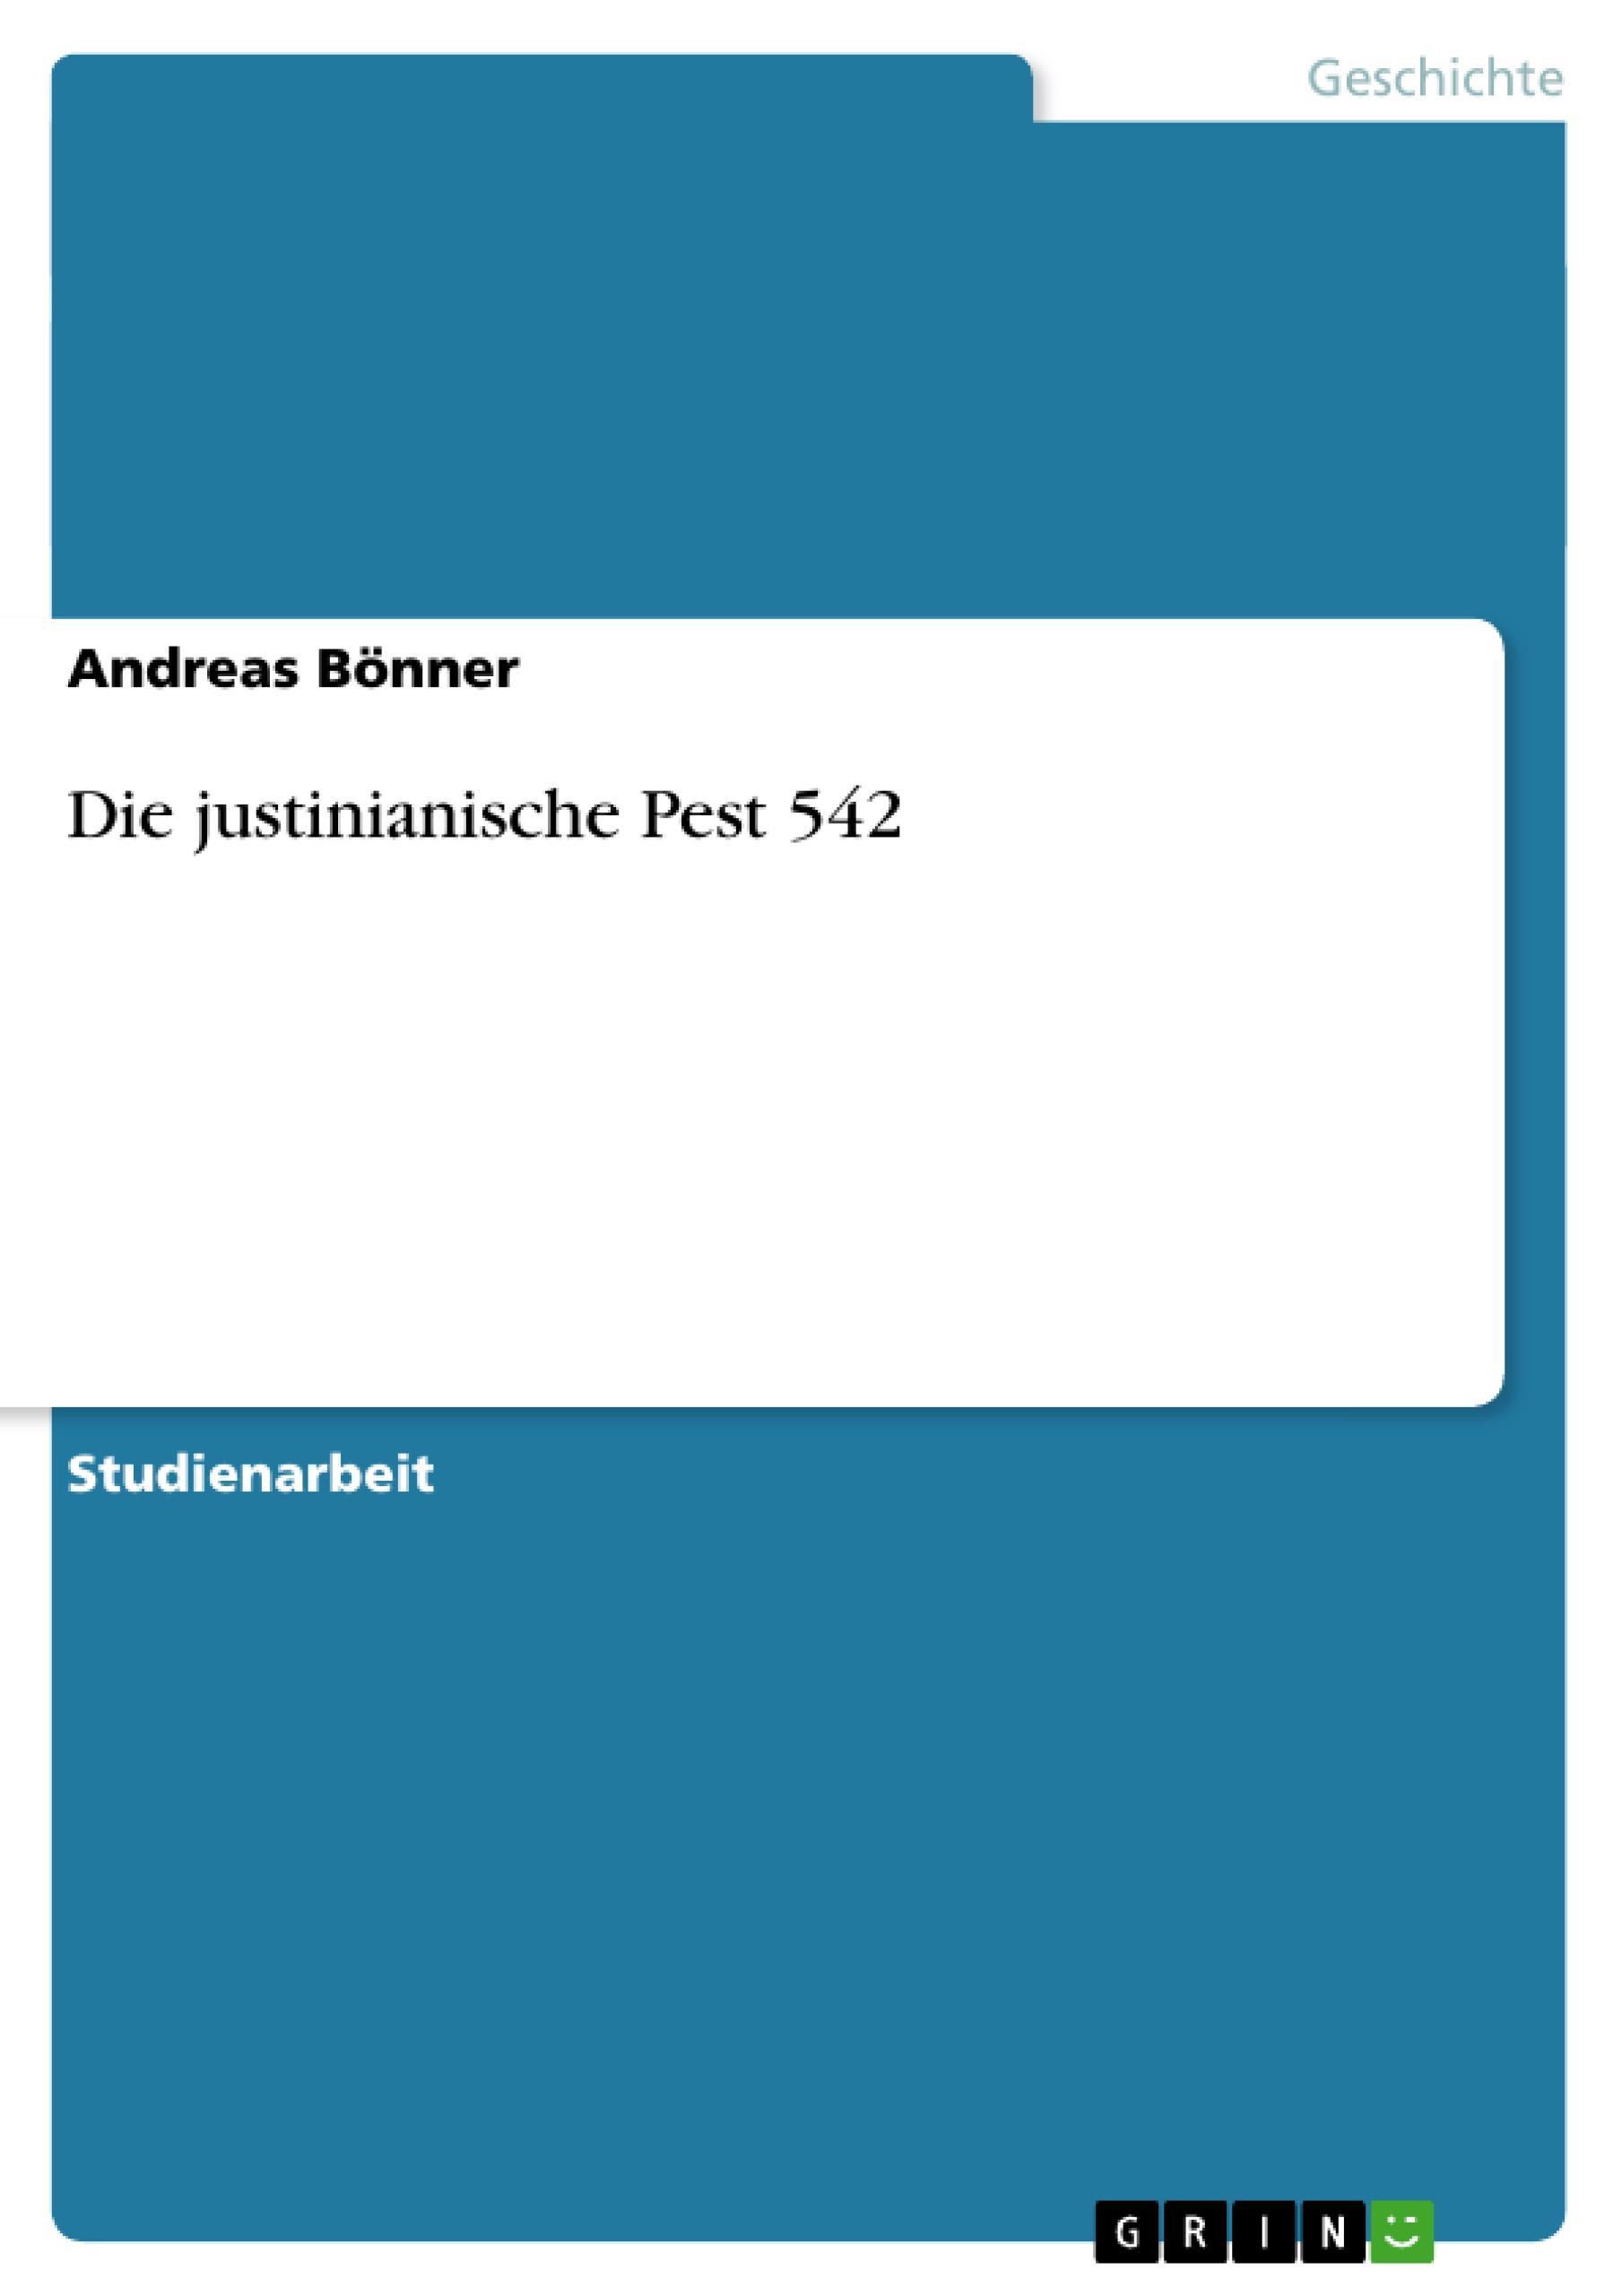 Die justinianische Pest 542 / Andreas Bönner / Taschenbuch / Paperback / 24 S. / Deutsch / 2009 / GRIN Verlag / EAN 9783640499434 - Bönner, Andreas